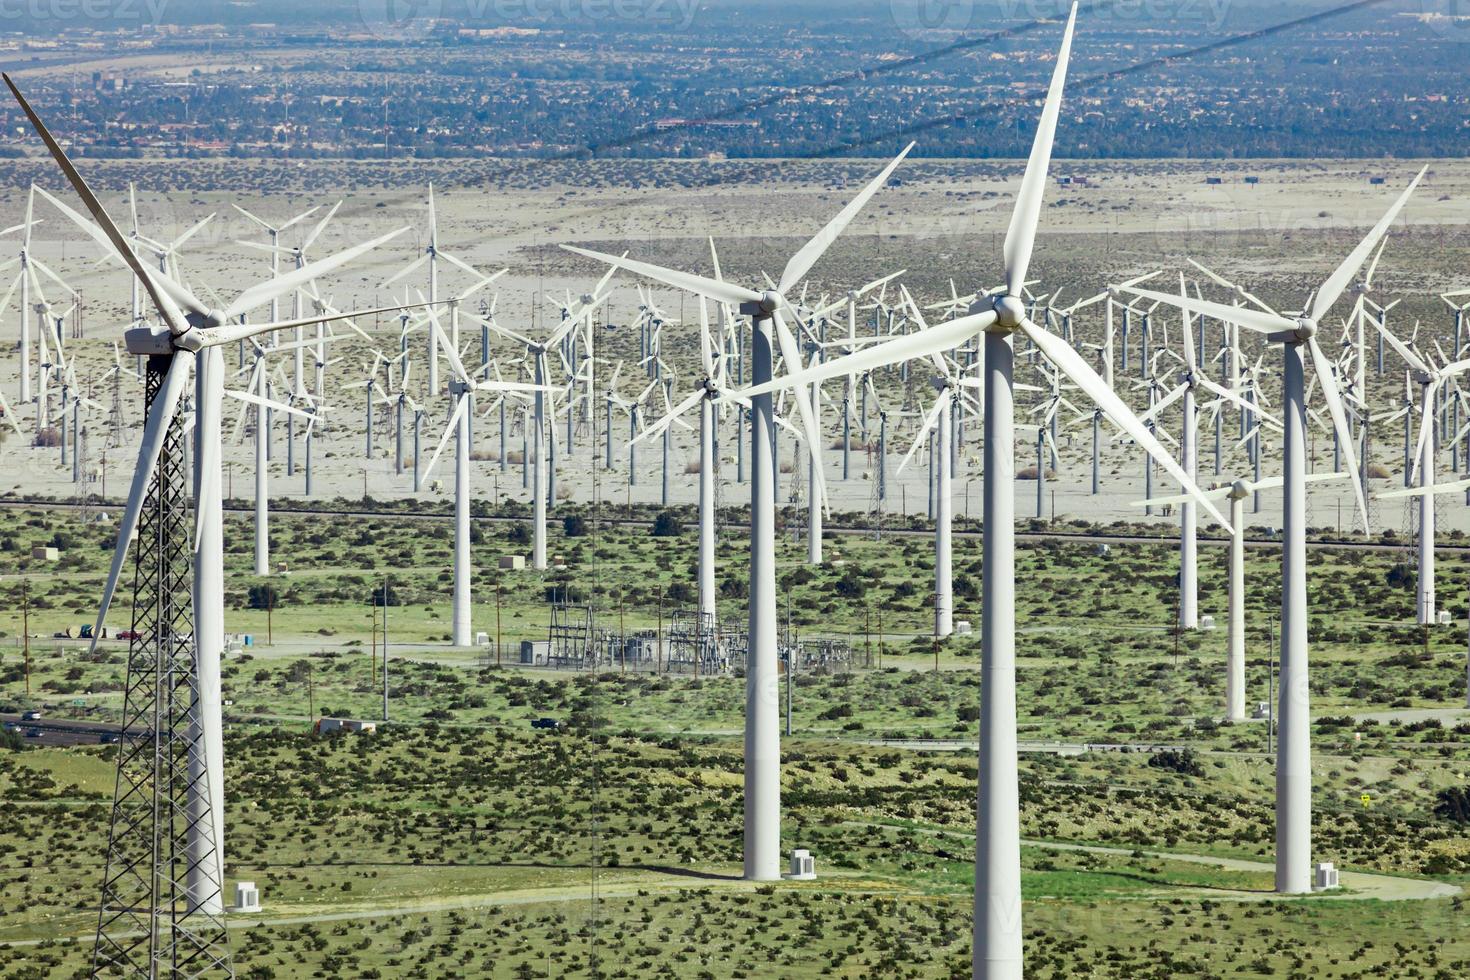 espectacular granja de turbinas eólicas en el desierto de california. foto